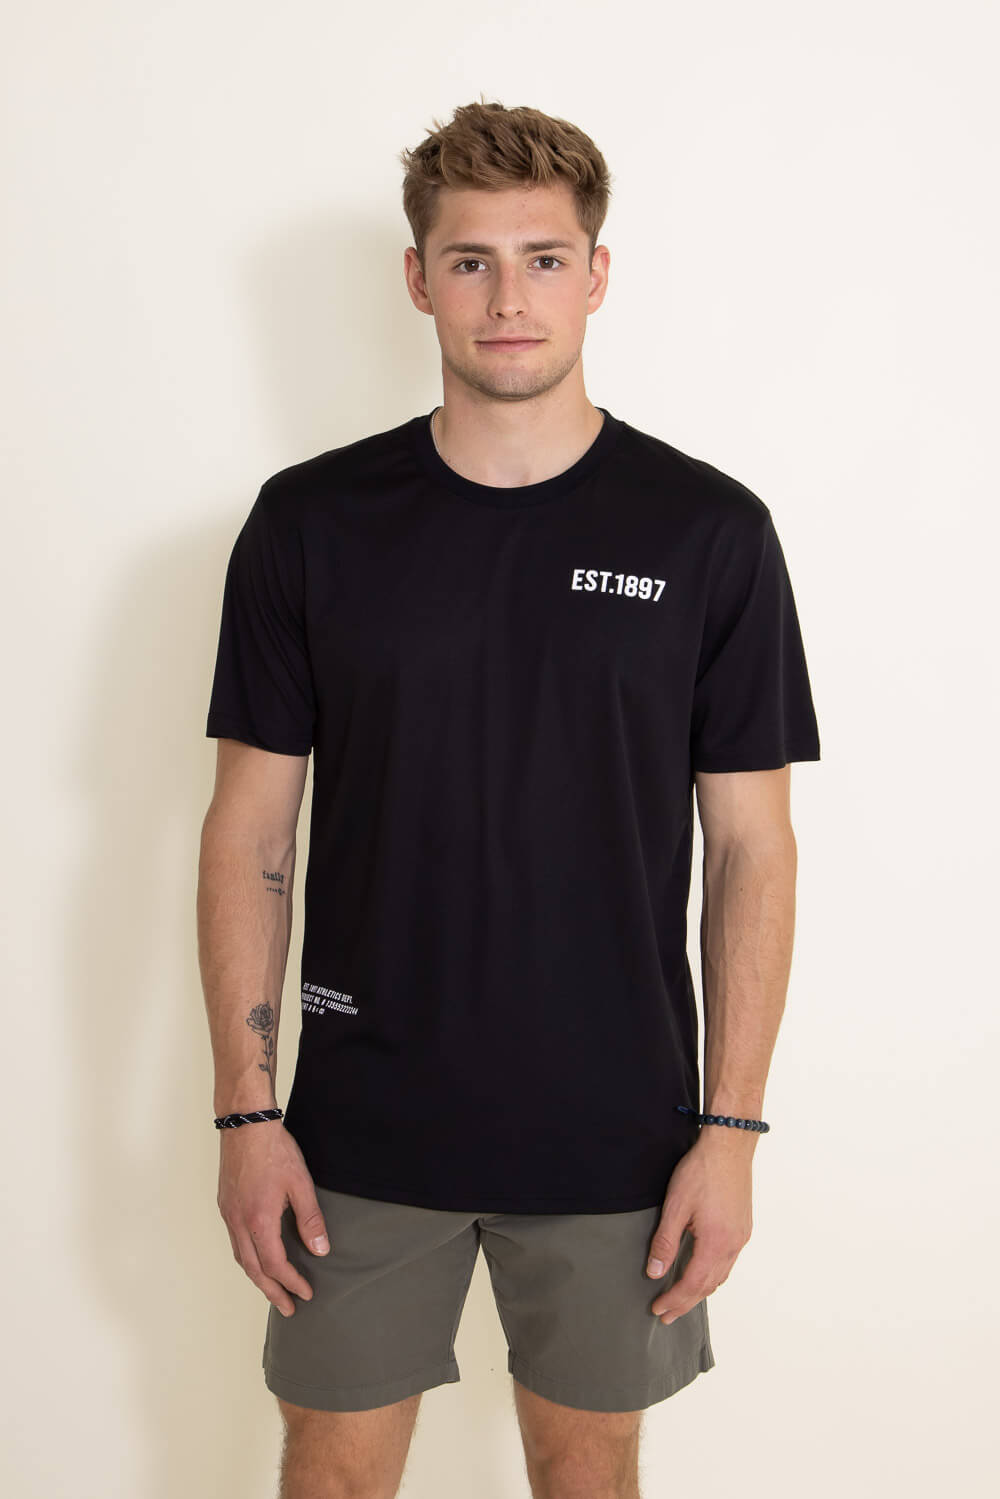 Est. 1897 Tech T-Shirt for Men in Black | CTME694S-BLK – Glik's